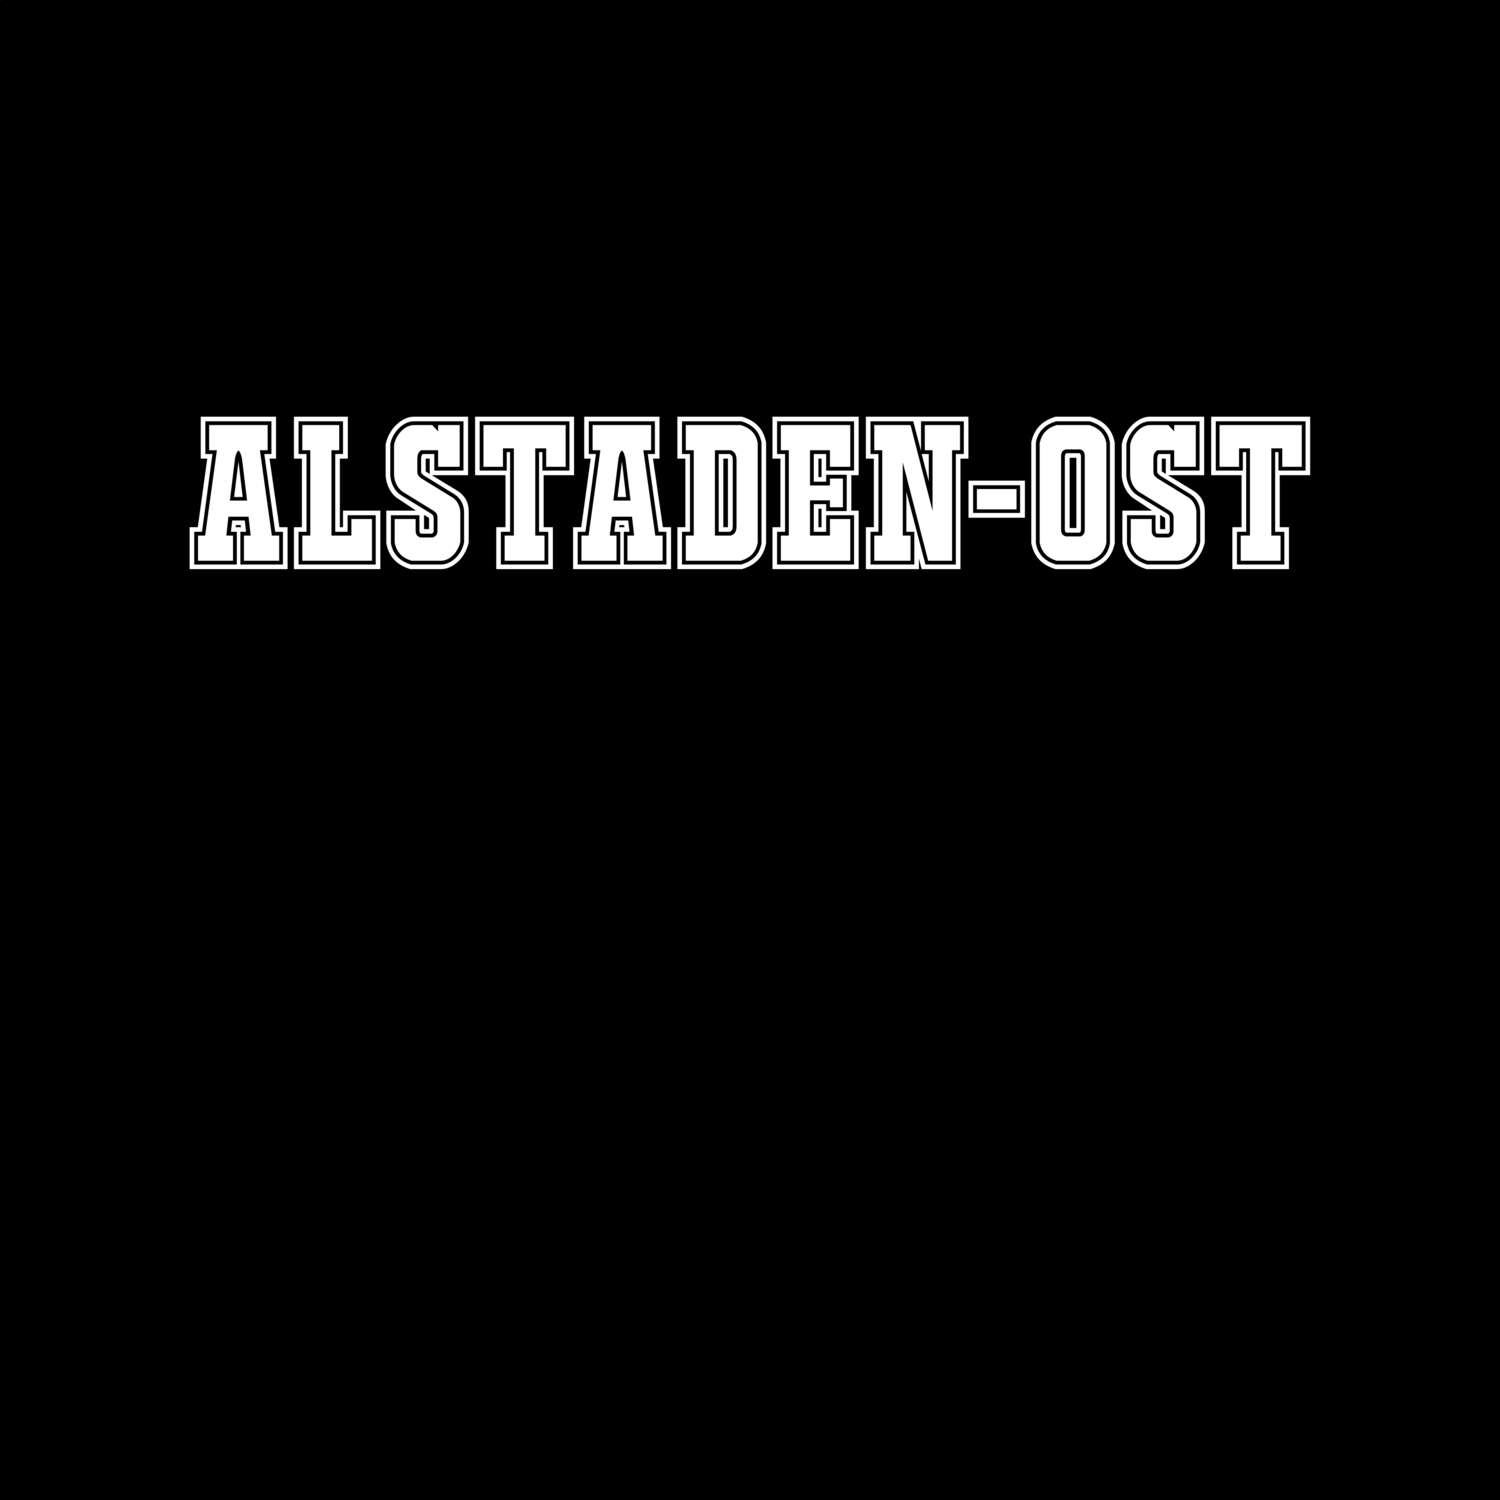 Alstaden-Ost T-Shirt »Classic«